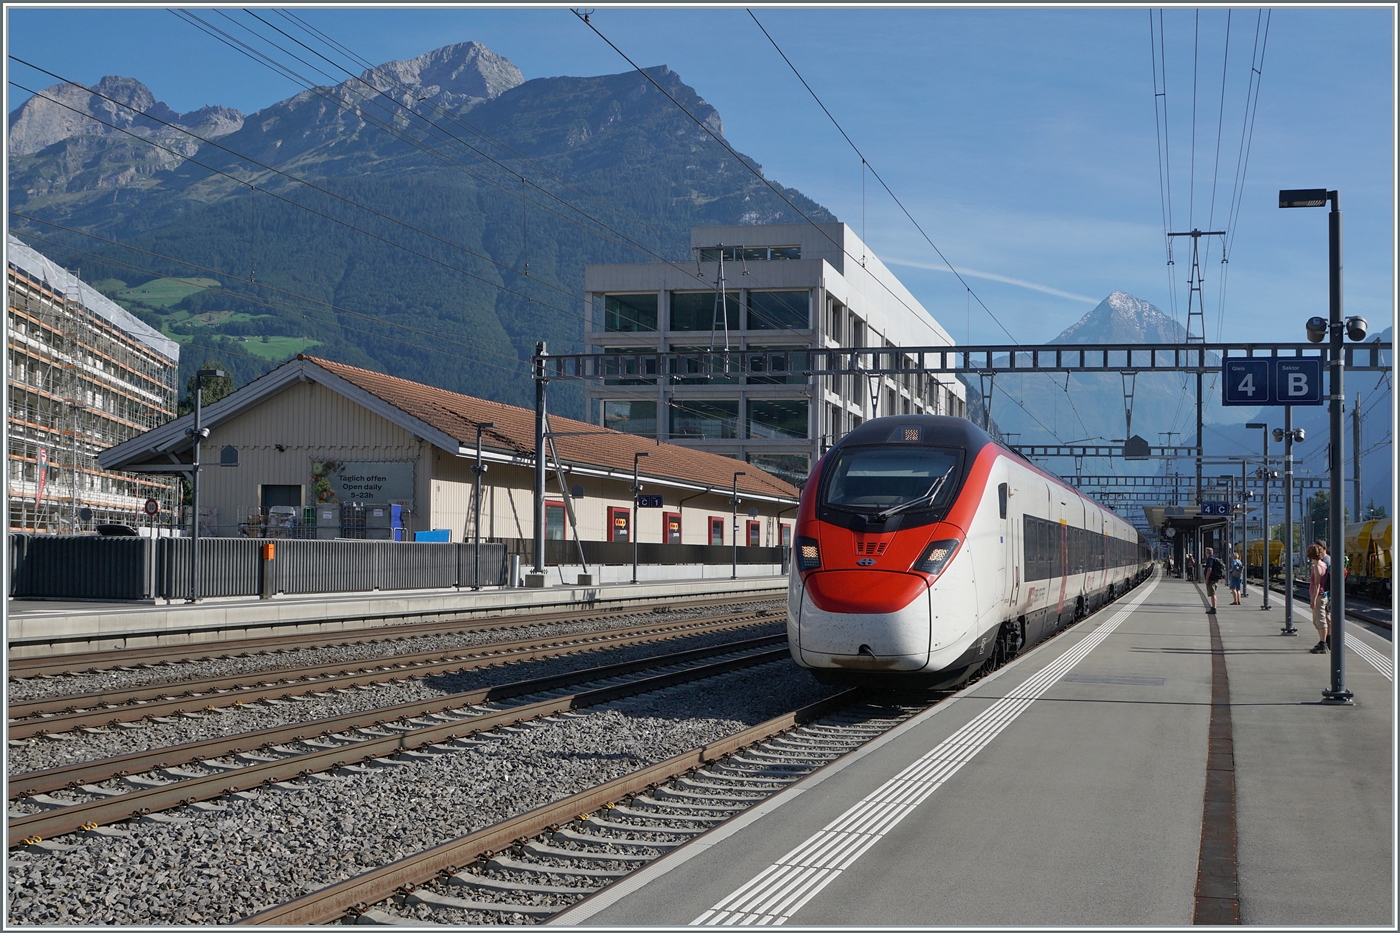 Der SBB  Giruno  RABe 501 016  ZUG  und ein weiterer auf dem Weg in Richtung Basel beim Halt in Altdorf.

4. Sept. 2023